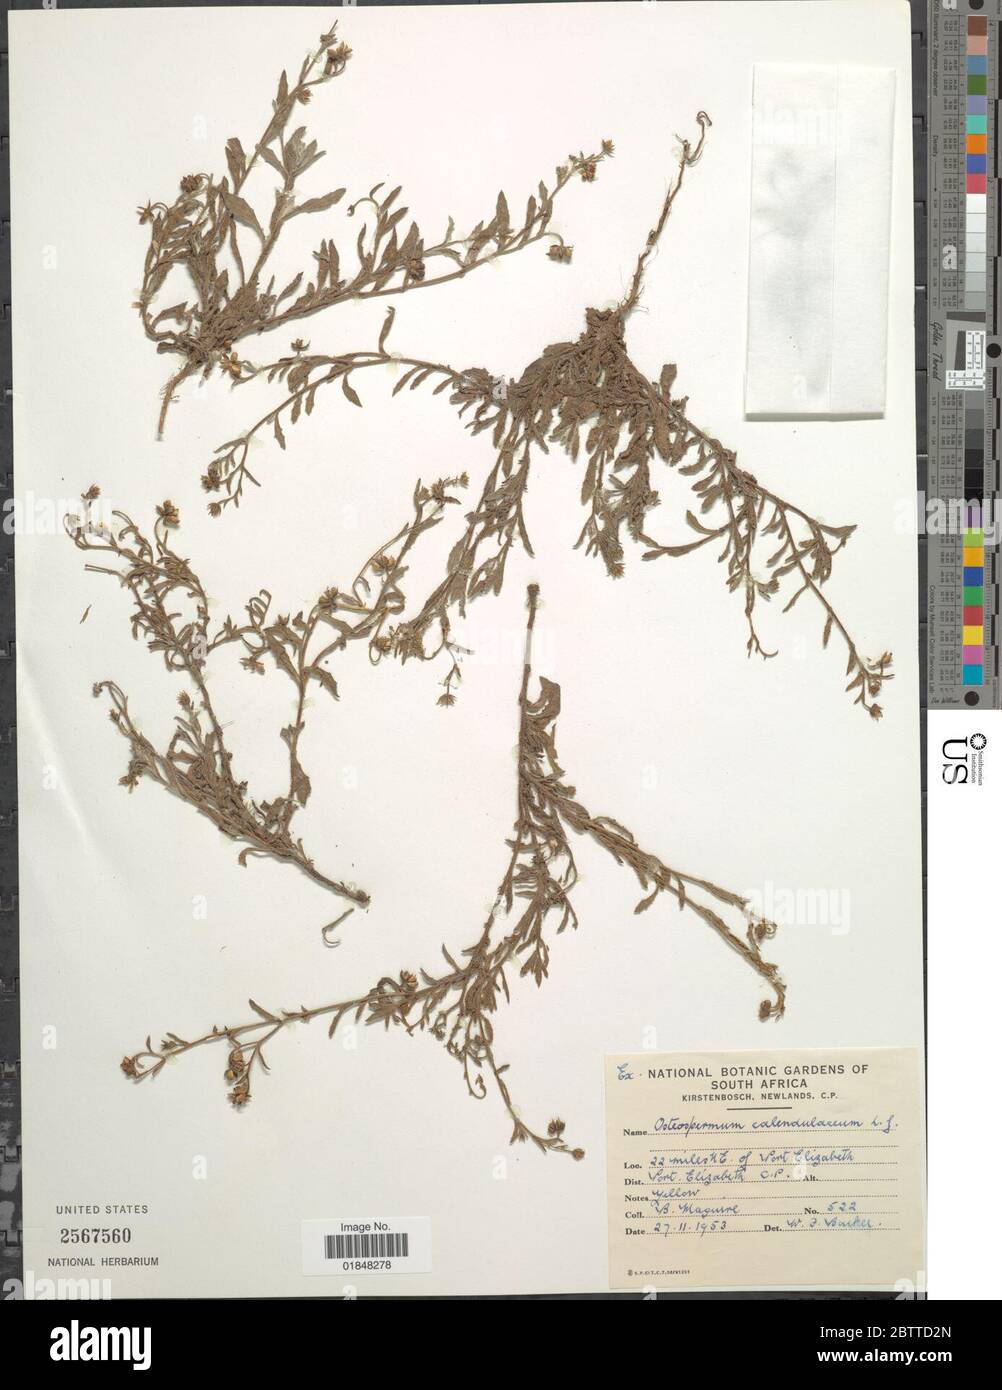 Osteospermum calendulaceum L f. Stock Photo